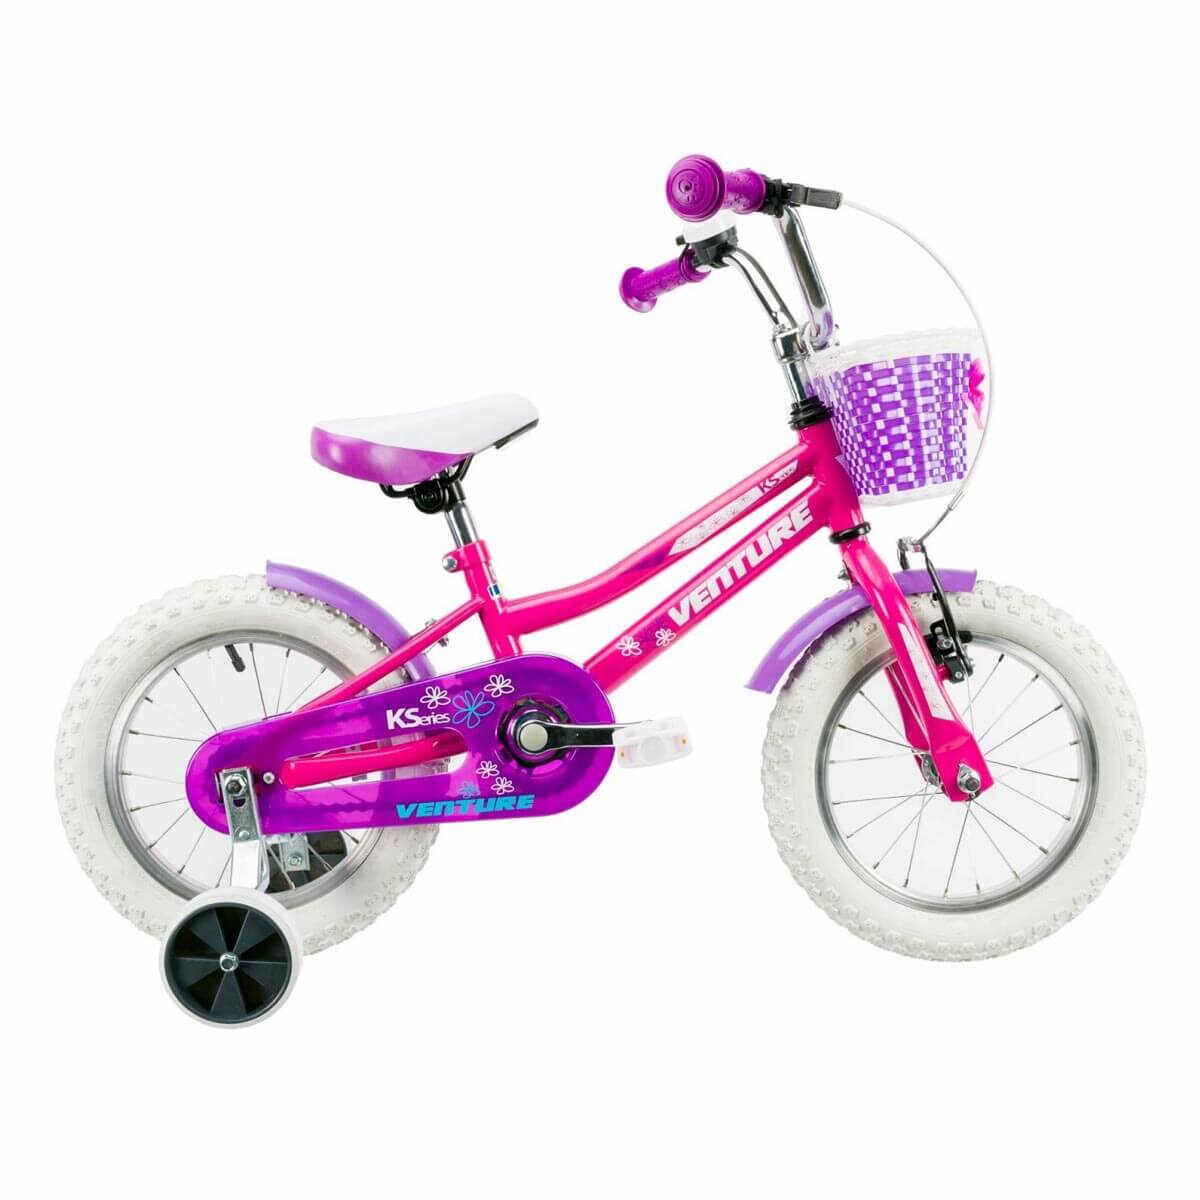 Bicicleta Copii Venture 1418 2019 - 14 Inch, Roz